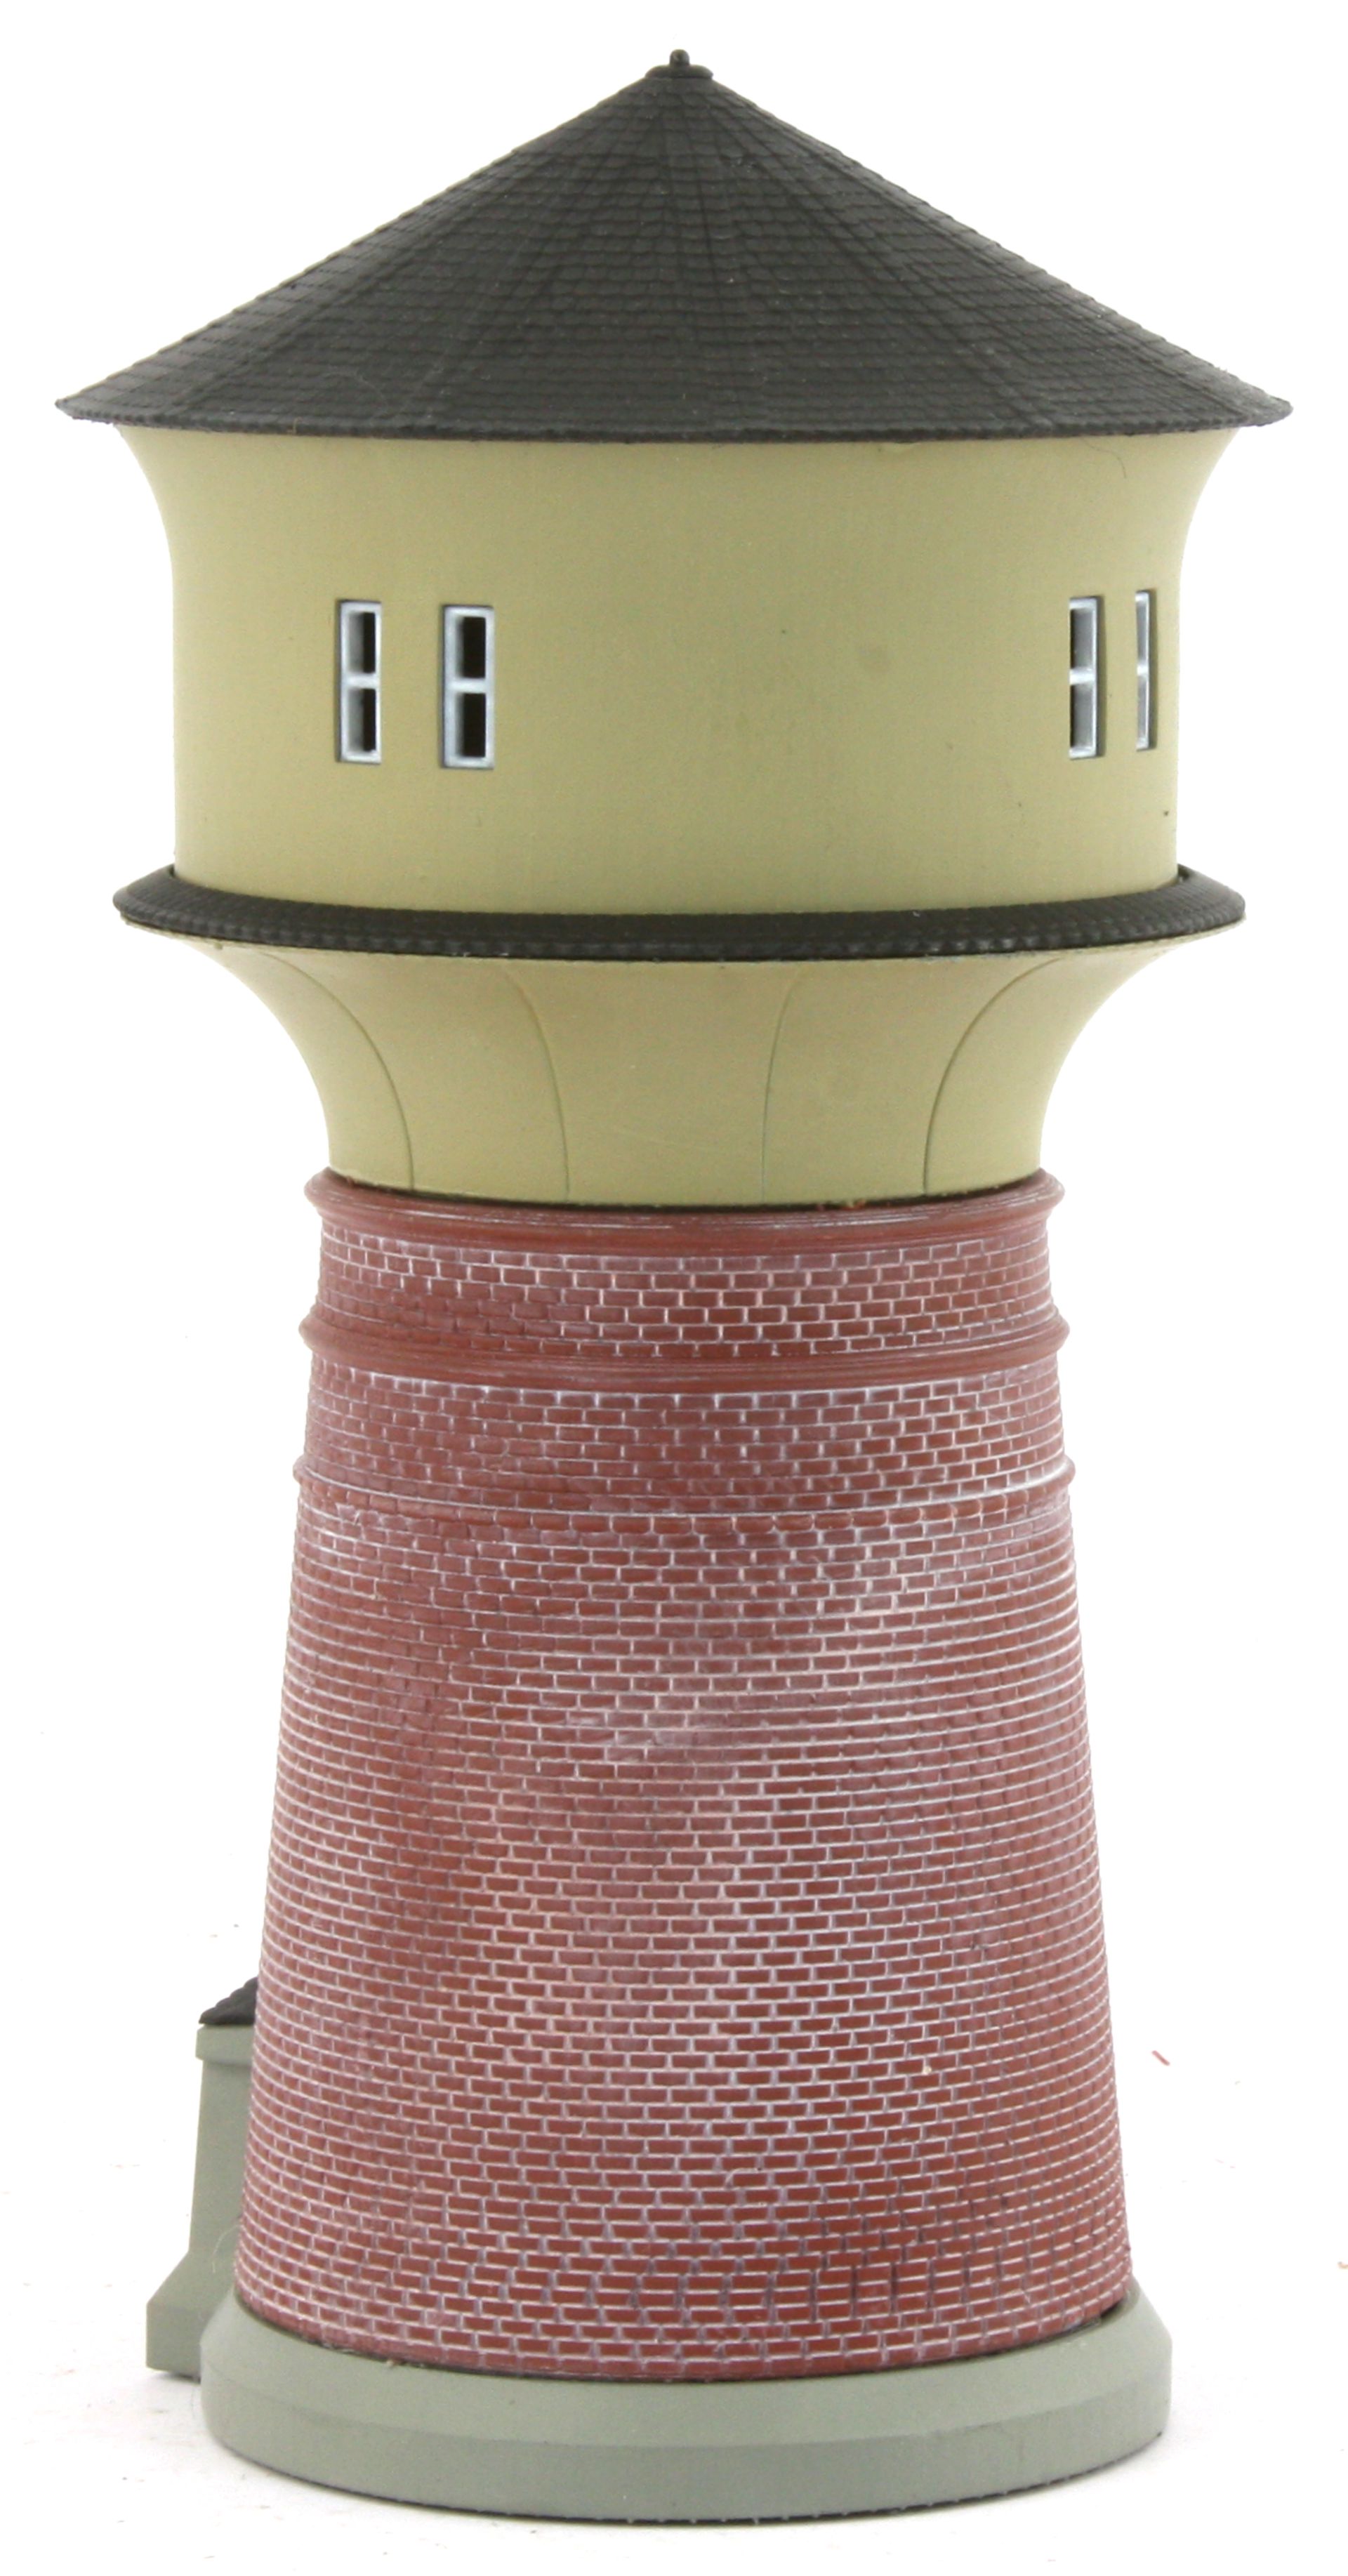 Radestra 414520 - Wasserturm, Höhe 90 mm, coloriertes Fertigmodell